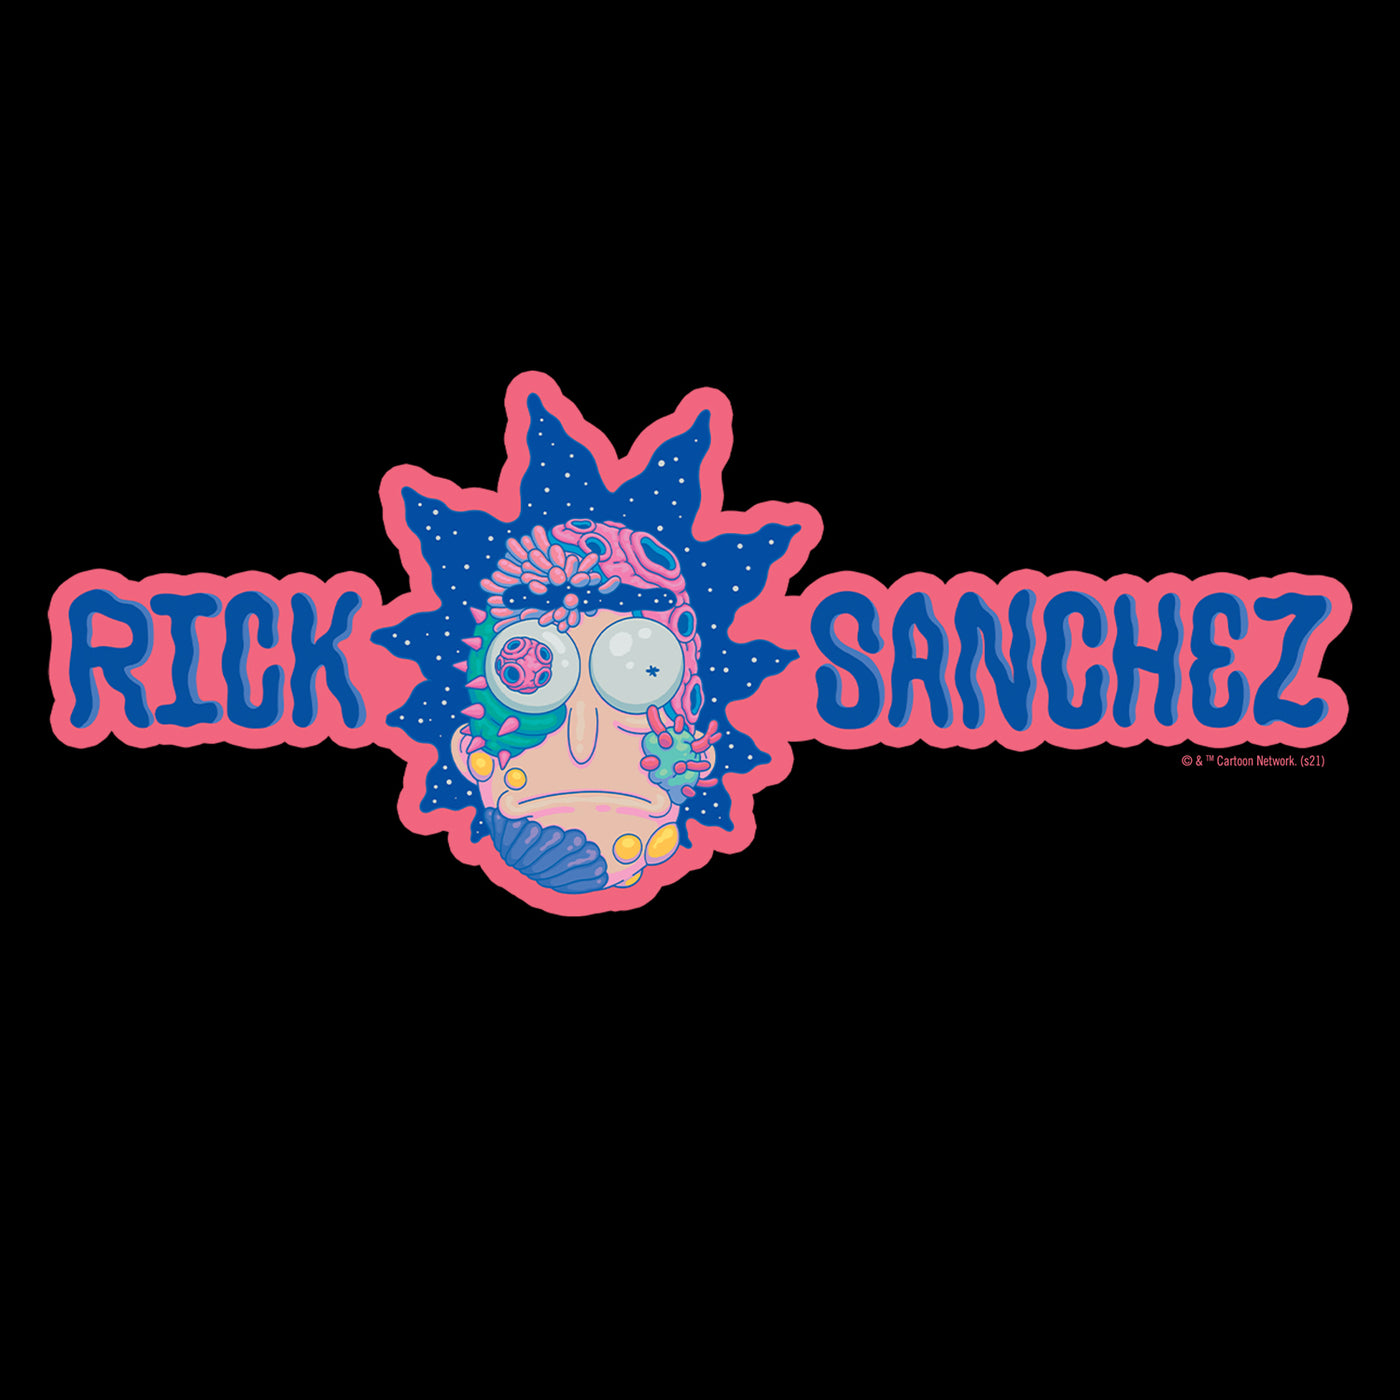 Rick and Morty Rick Sanchez Adult Fleece Hooded Sweatshirt